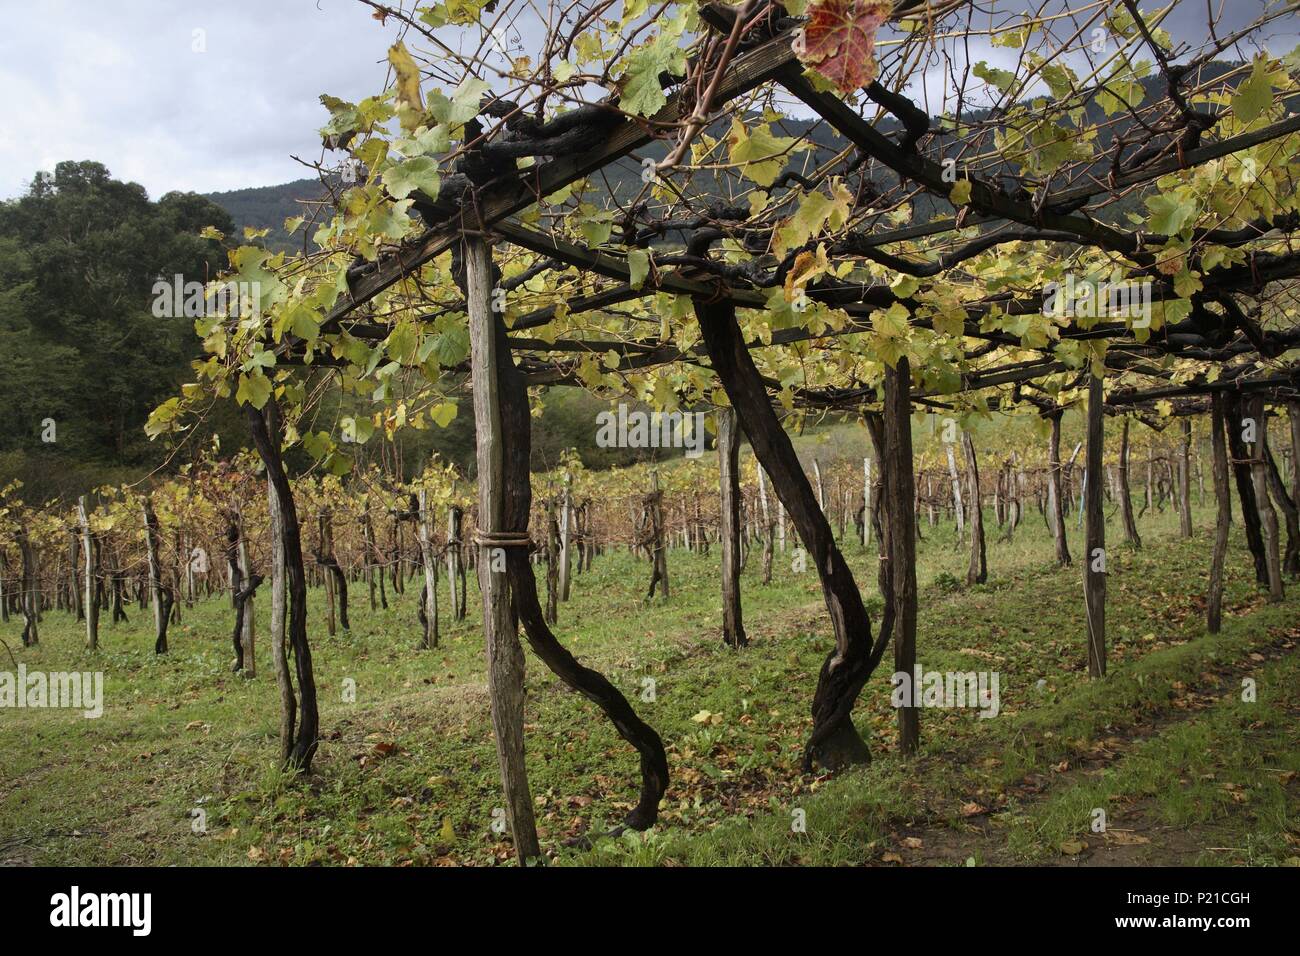 SPAIN - BASQUE COUNTRY - Munguia (district) - Biscay. Bakio / Baquio; viñedos para producir el vino 'Txakoli' (característico de la zona). Stock Photo